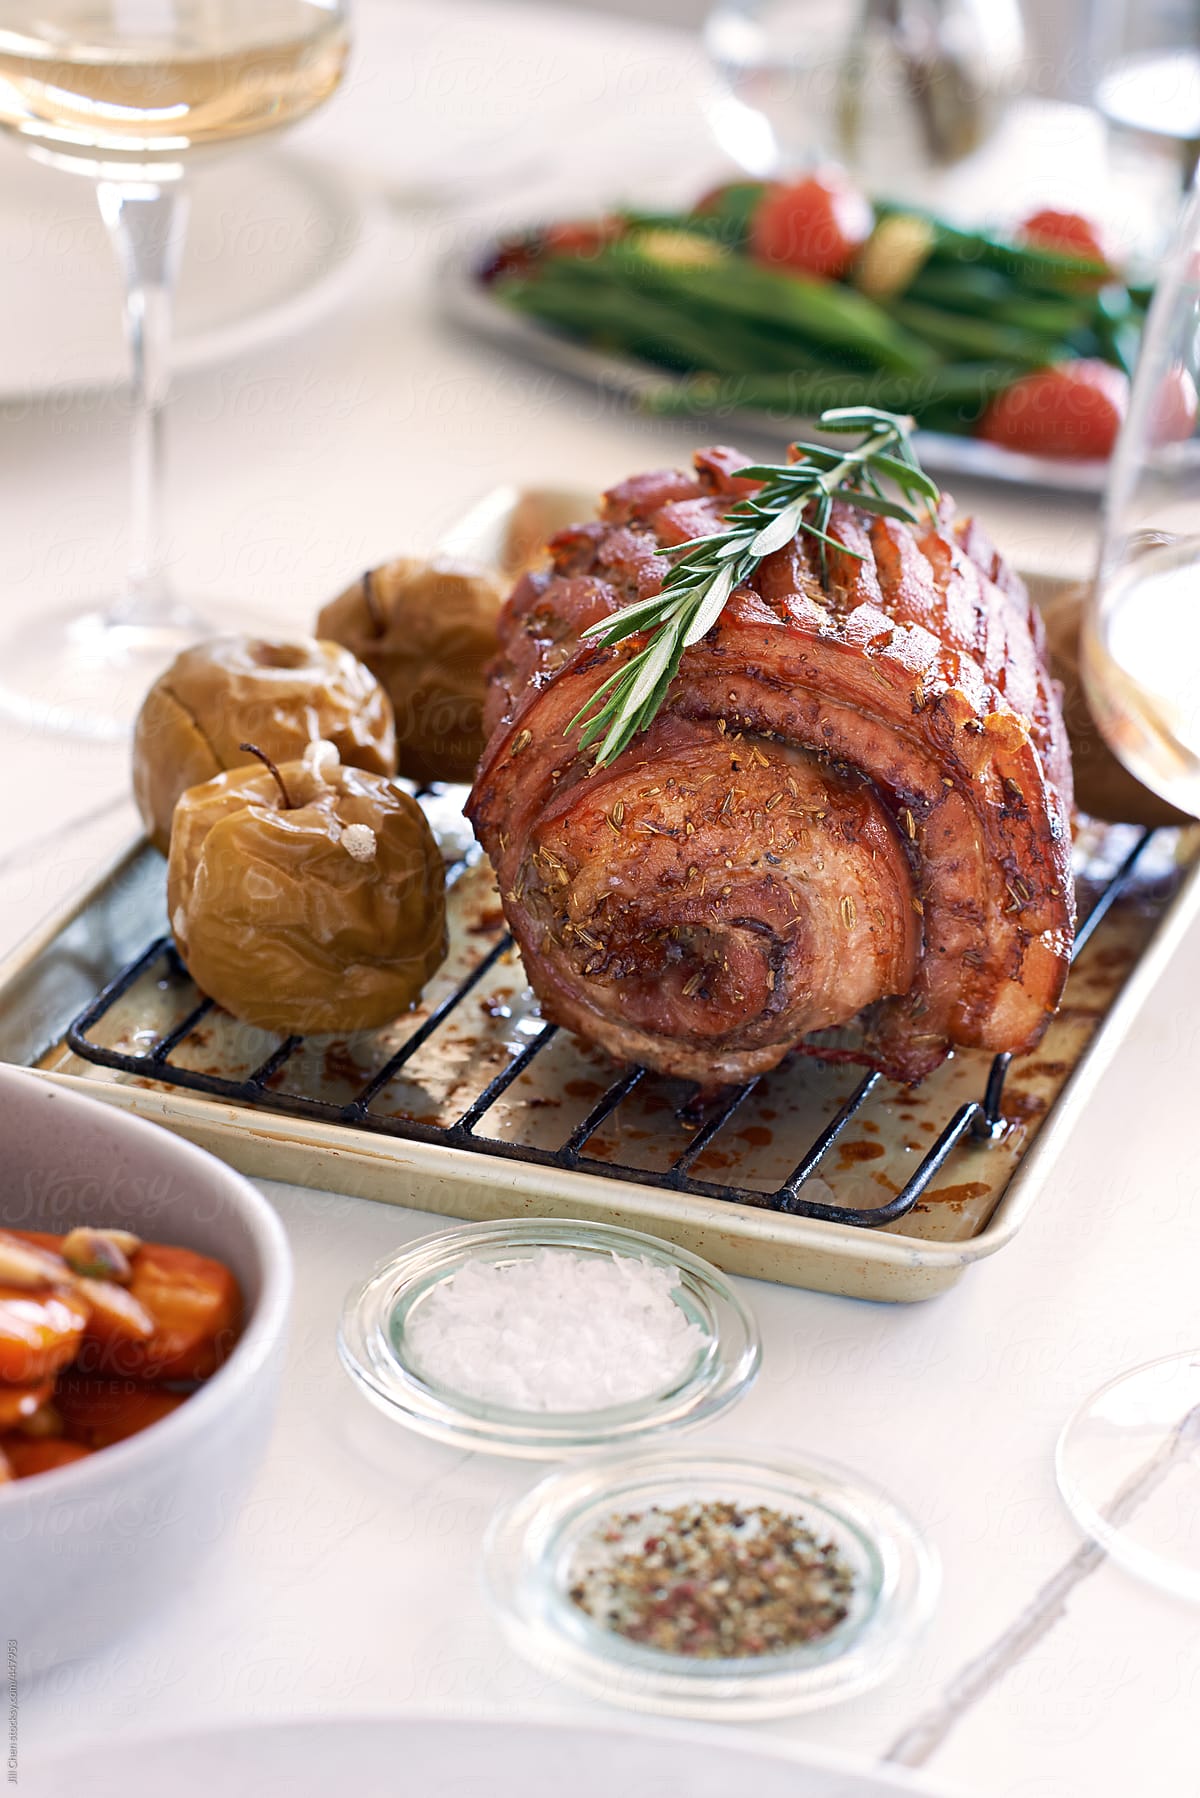 Golden pork roast with scored skin crackling